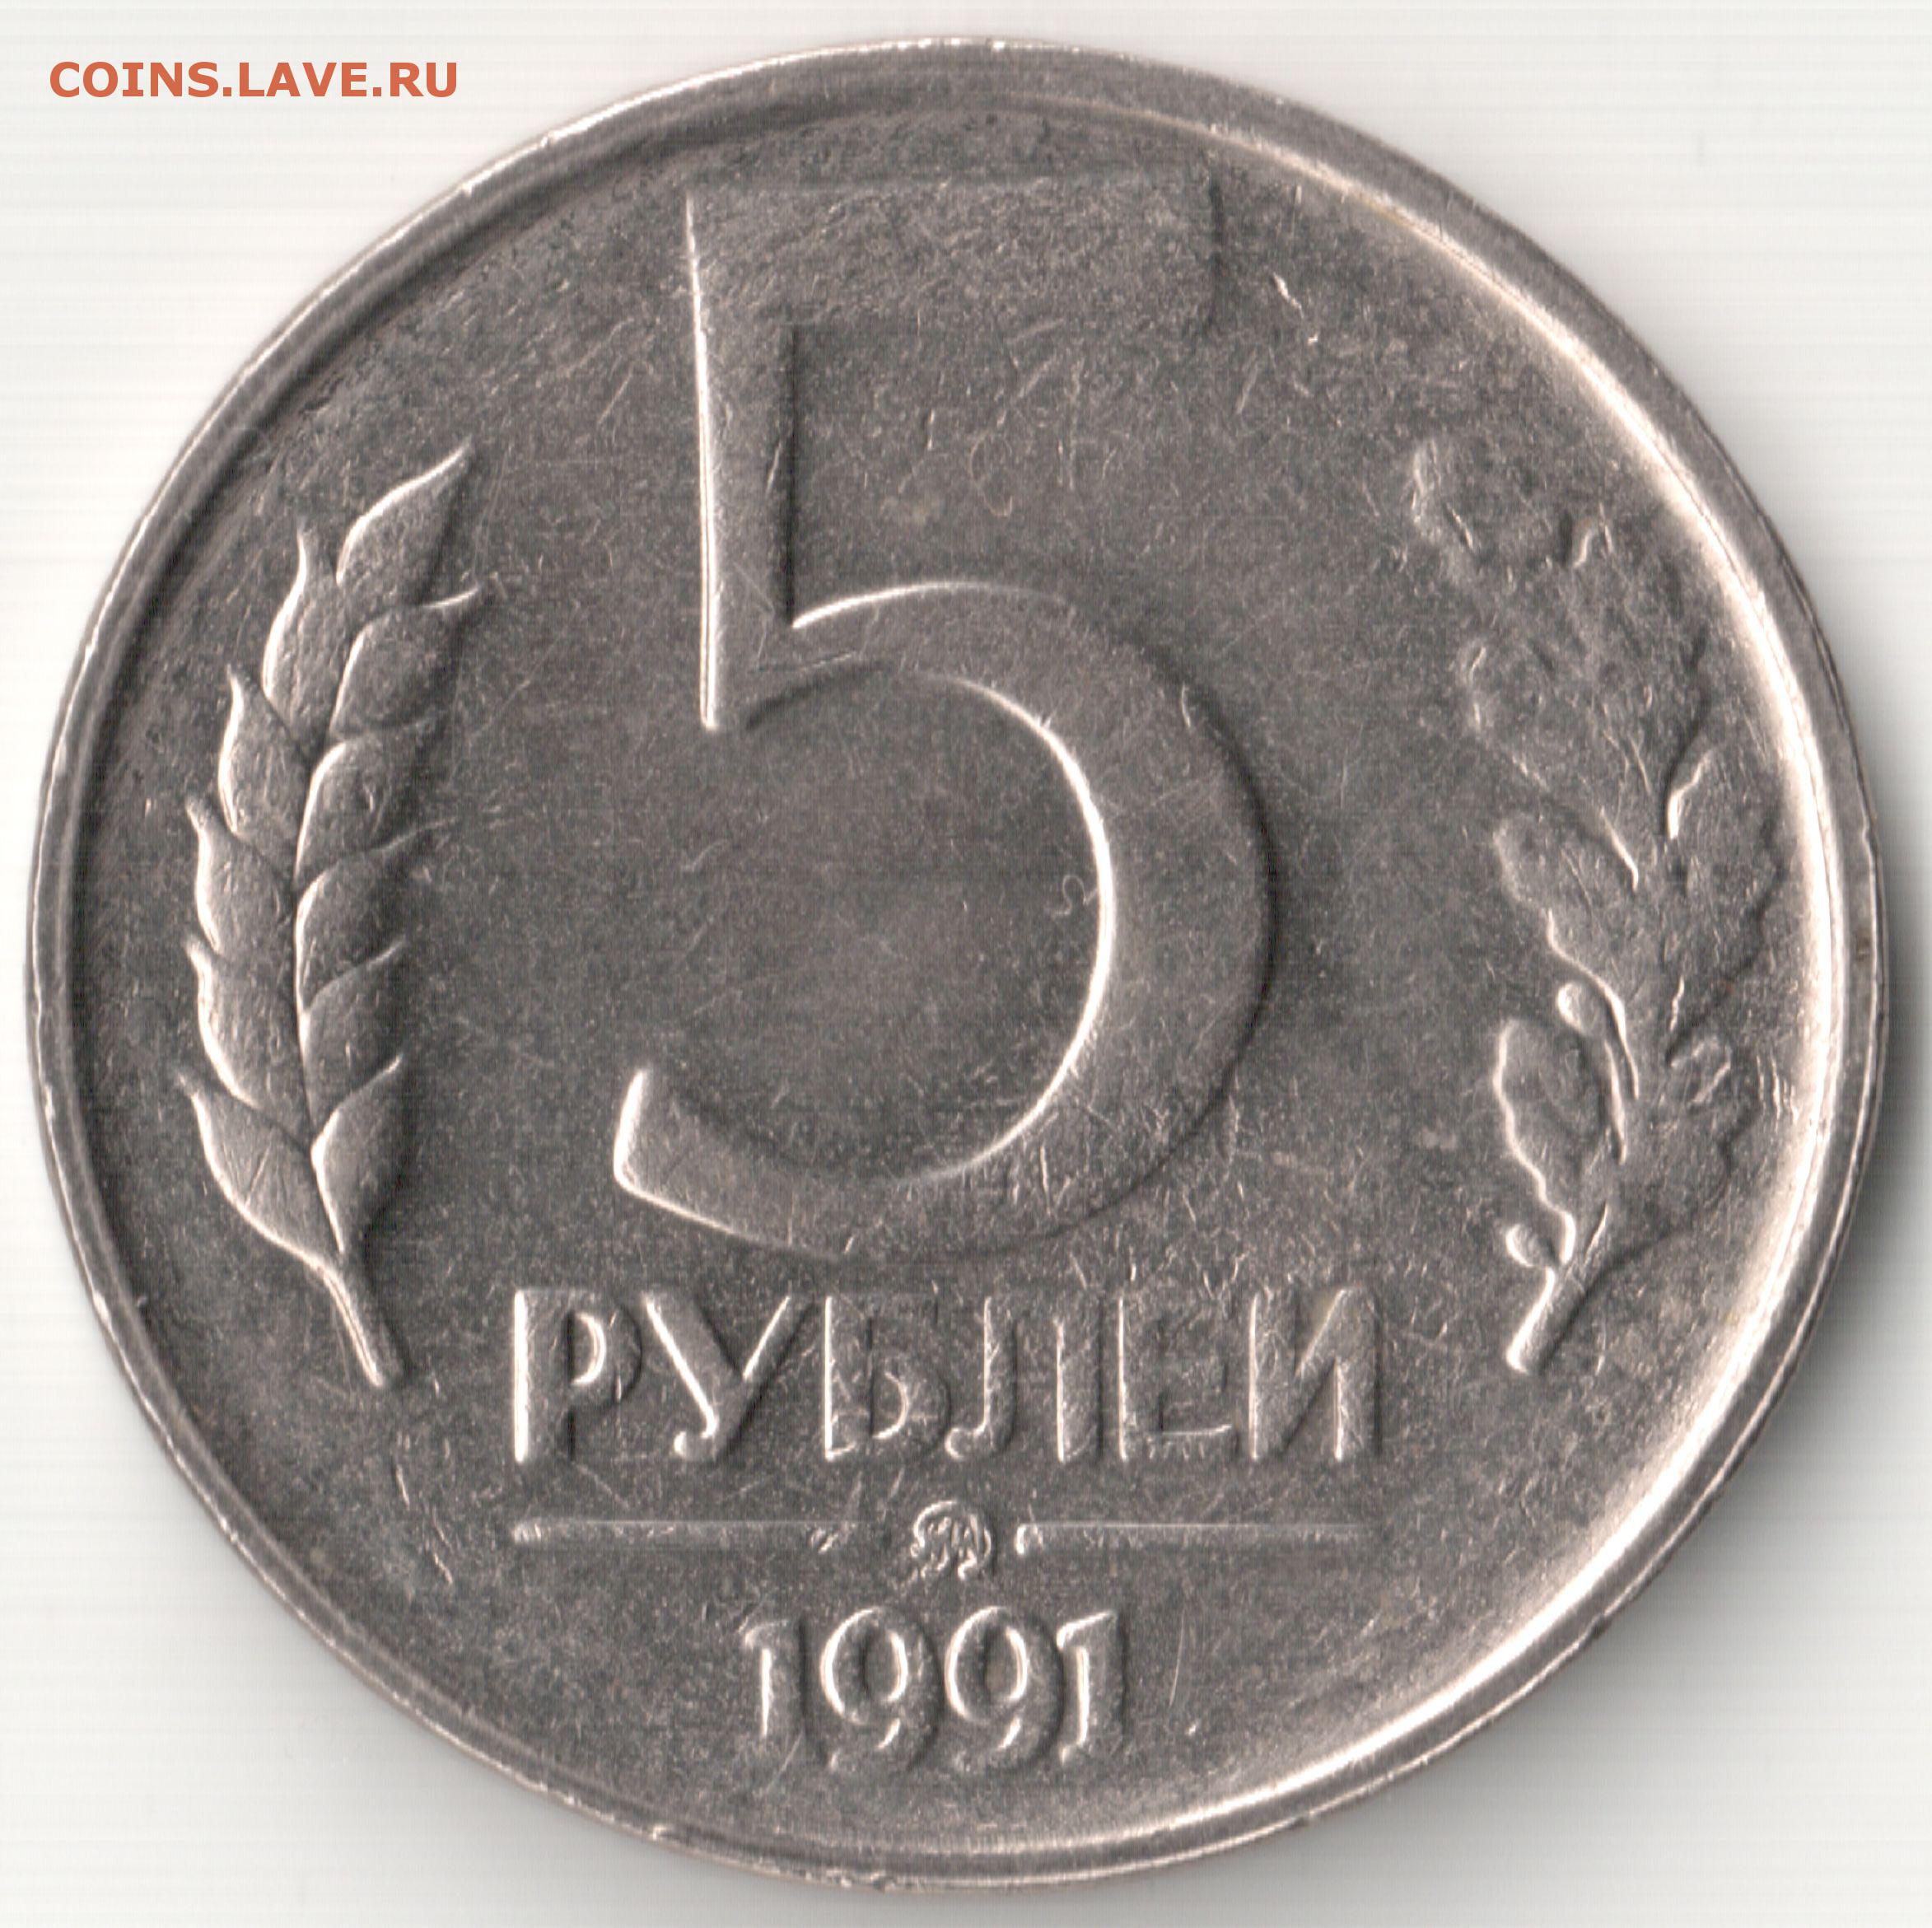 Тариф 5 рублей. Монета 5 рублей 1991 ЛМД. 5 Рублей 1991 ММД. 5 Рублей 1991 года ЛМД. Советские 5 рублей монета.